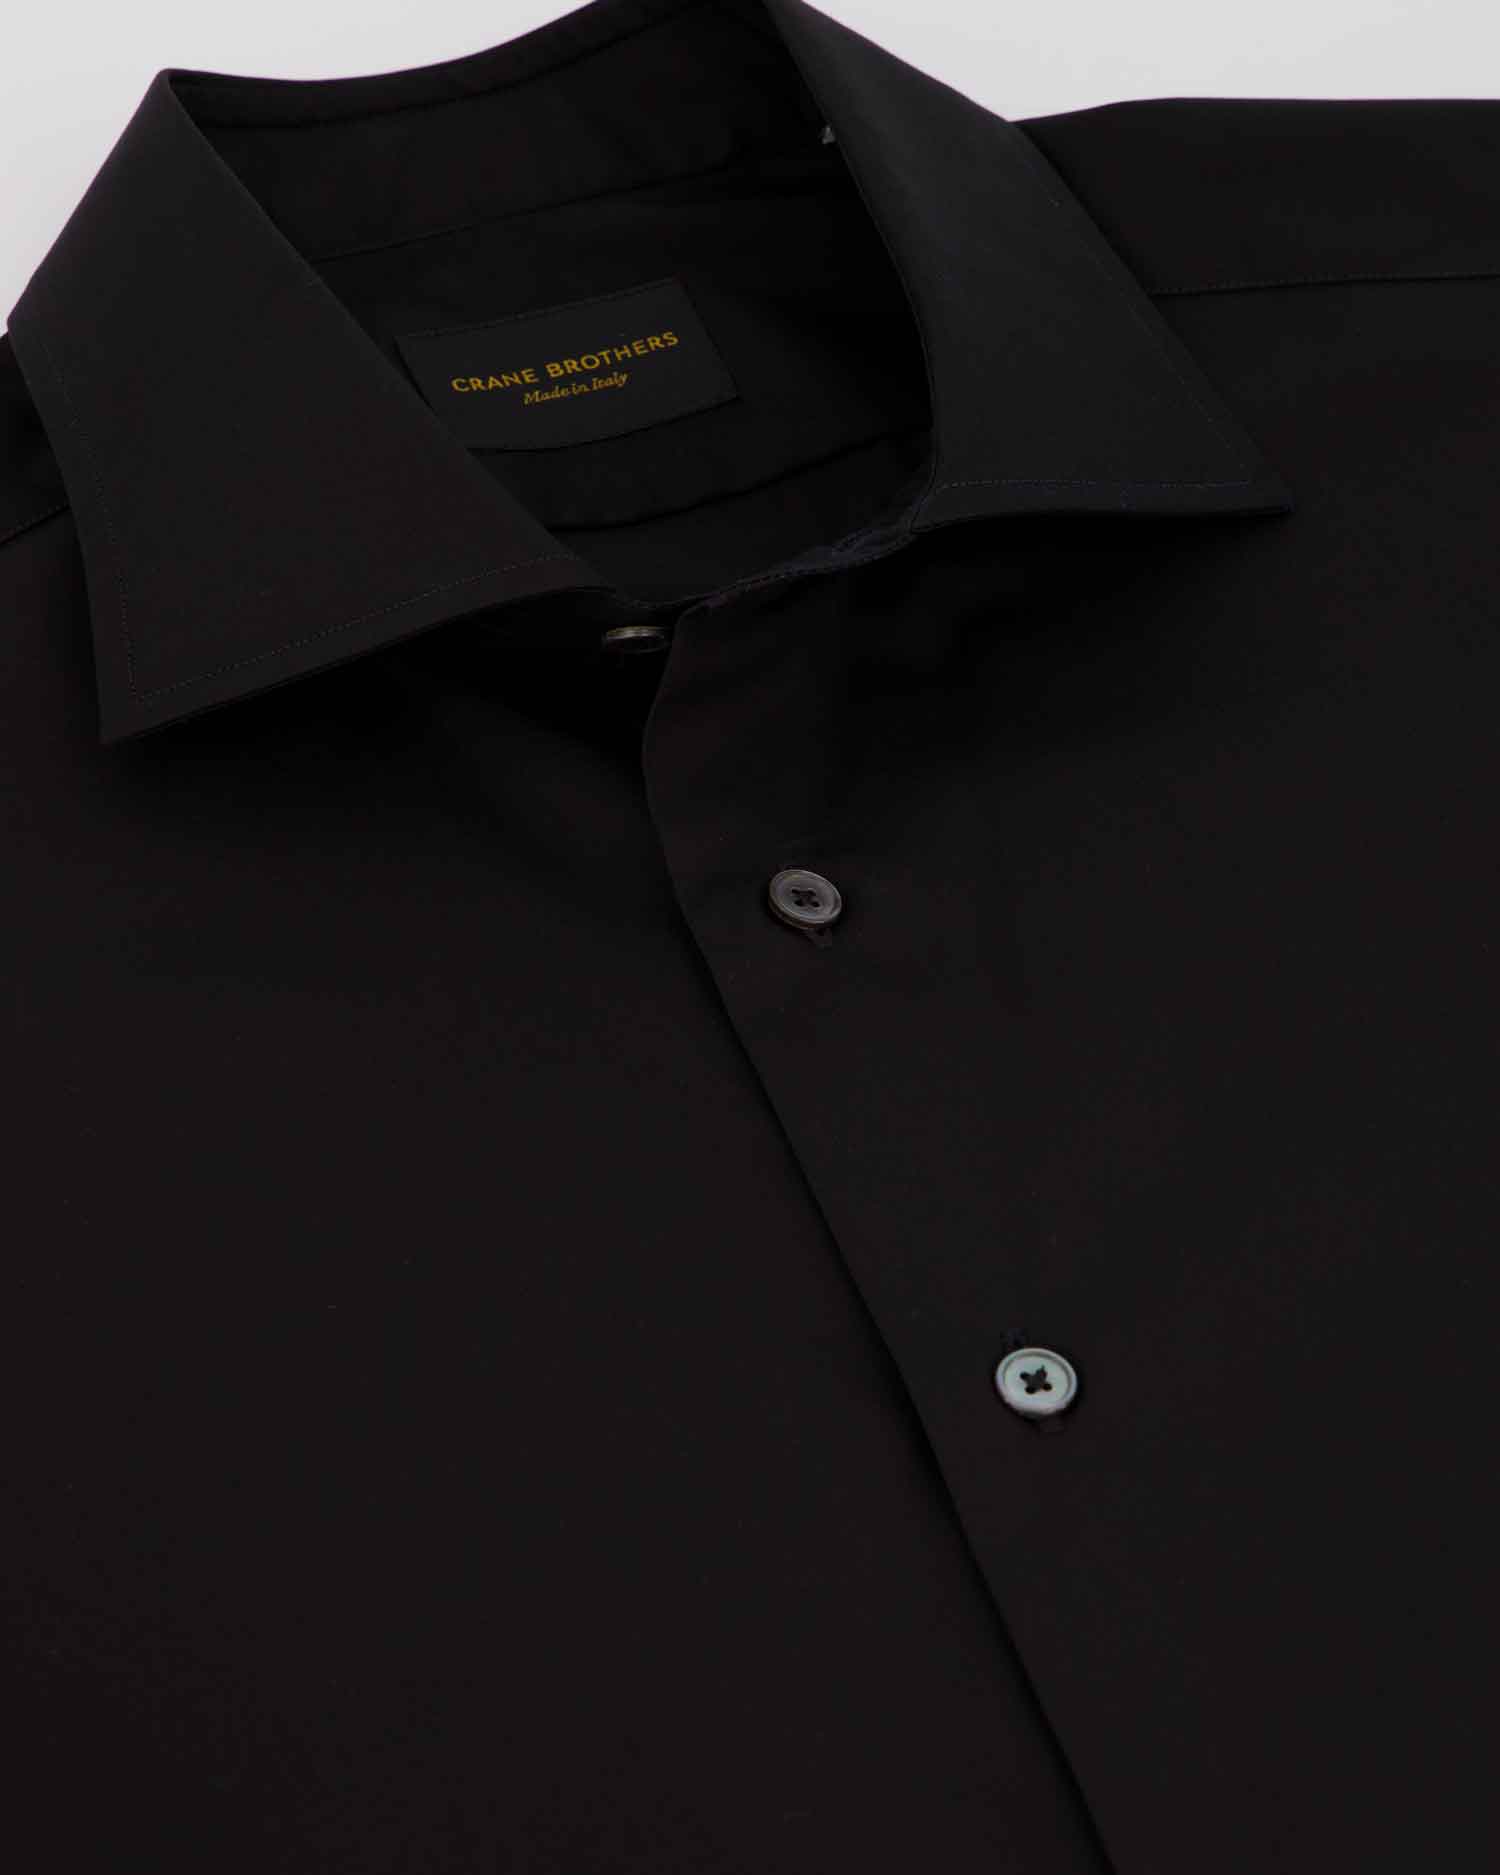 Black Cotton Poplin Spread Collar Shirt